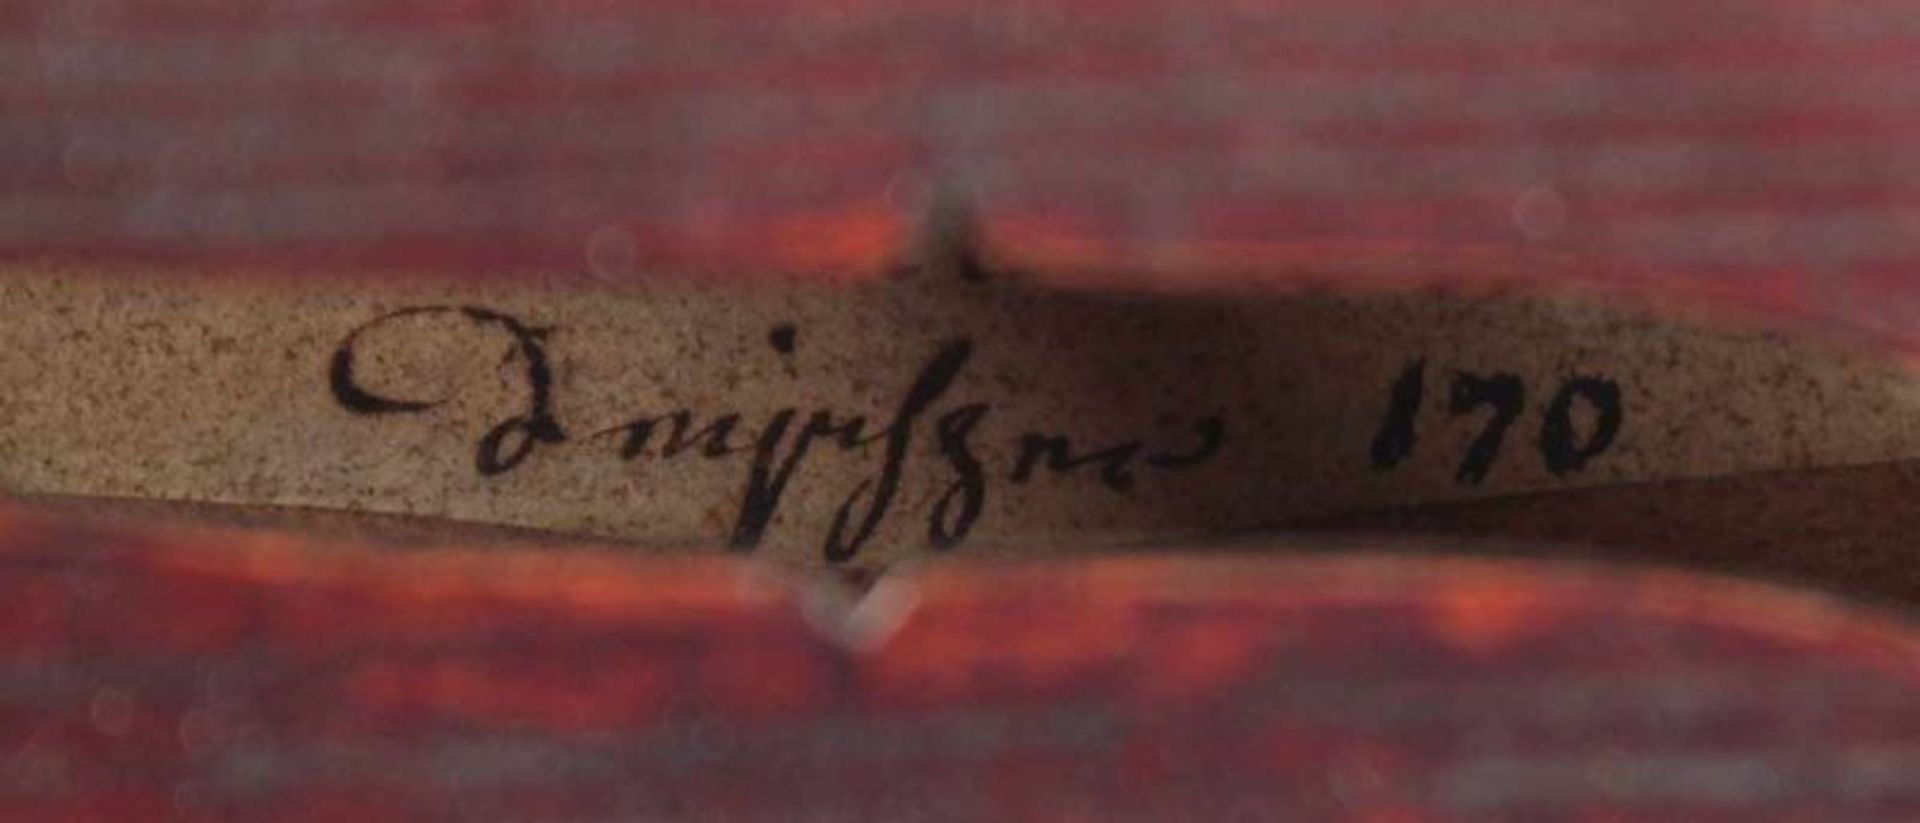 BRATSCHE, mit Bogen, in Kasten, rest.bed., L 65, innen bez. "Fent", wohl Francois FENT, PARIS, - Bild 9 aus 9